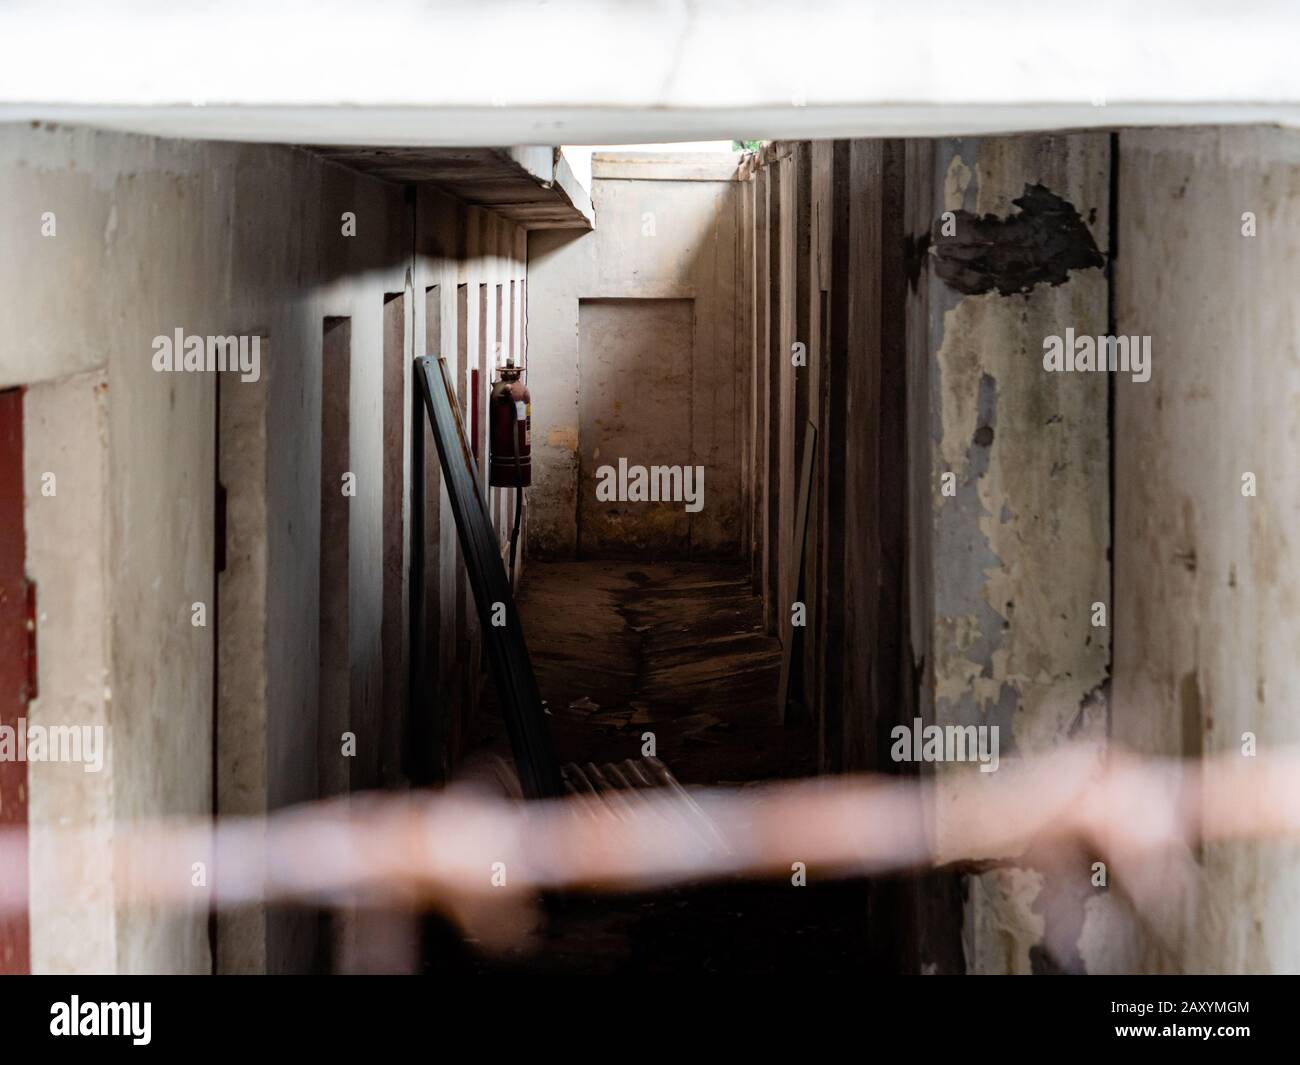 Innenkorridor eines verlassenen Gebäudes mit mehreren Türen, die auf Wohnräume oder Zellen hinweisen, die durch einen Drahtzaun betrachtet werden Stockfoto